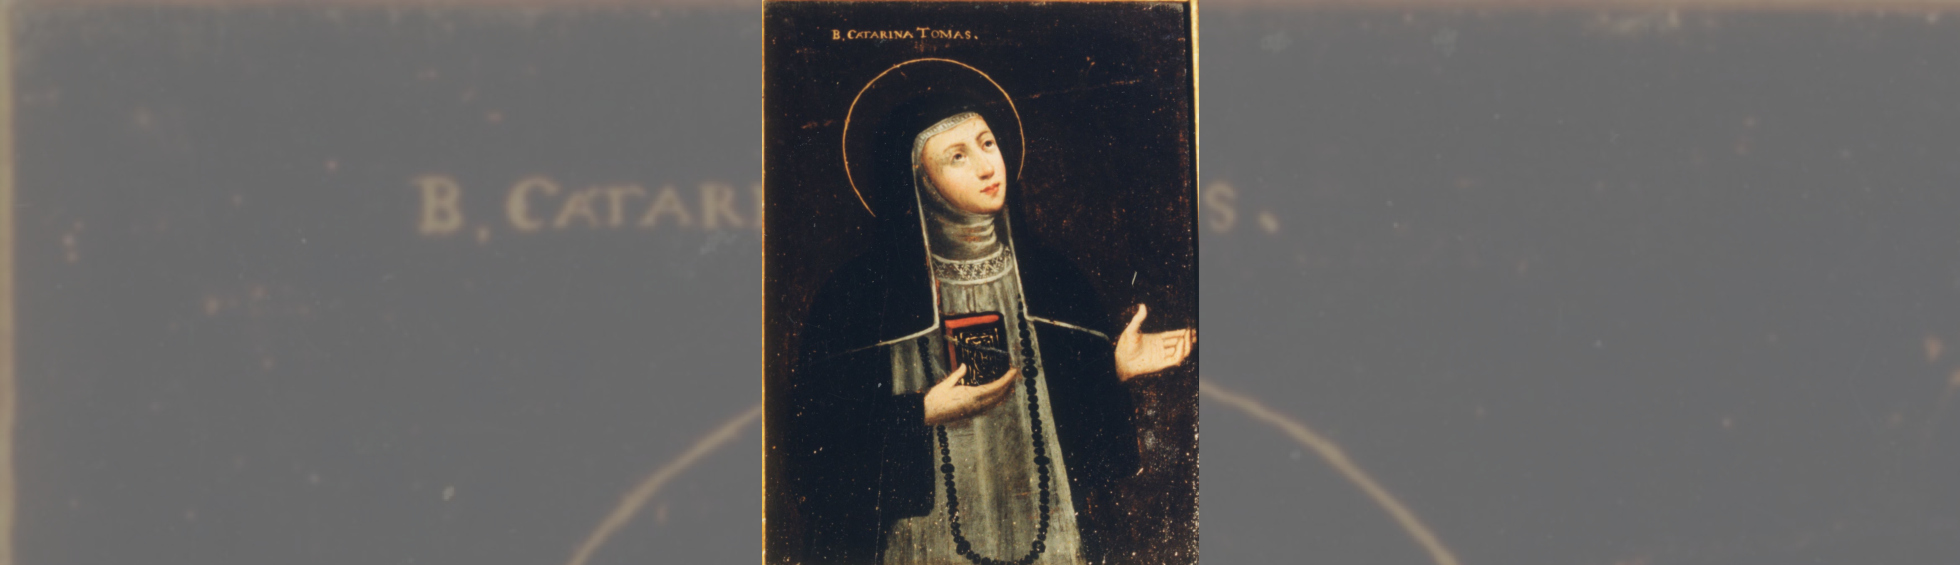 Portrait de Sainte Catherine Tomas:auréolée d'or en habit noir avec un long collier noir,tenant une bible,